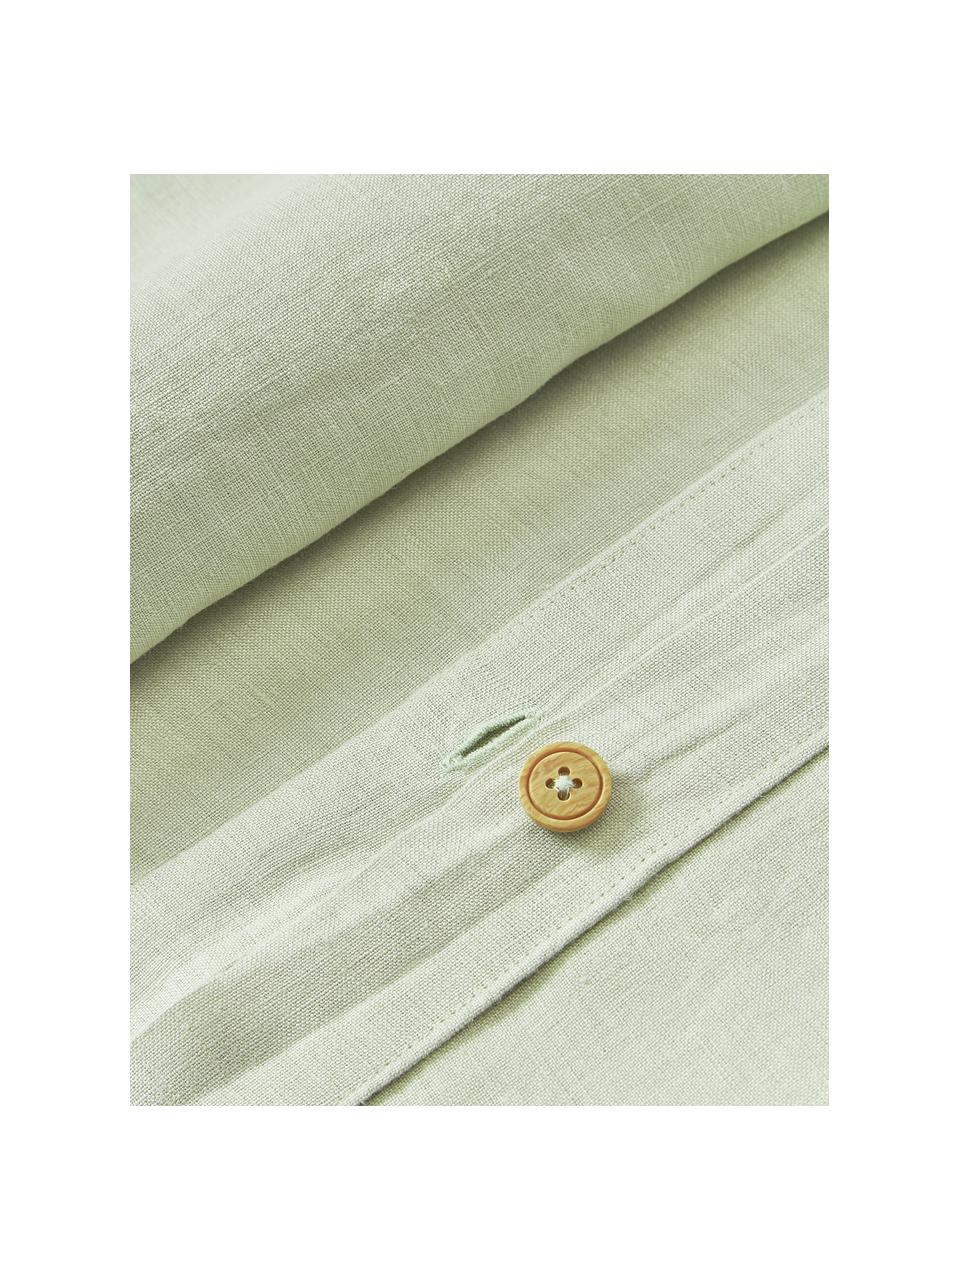 Taie d'oreiller en lin délavé Airy, 100 % pur lin
Densité 110 fils par pouce carré, qualité standard

Le lin est une fibre naturelle qui se caractérise par sa respirabilité, sa résistance et sa douceur. Le lin est un matériau rafraîchissant et absorbant qui absorbe et évacue rapidement l'humidité, ce qui le rend idéal pour les températures chaudes.

Le matériau est certifié STANDARD 100 OEKO-TEX®, 15.HIN.65948, HOHENSTEIN HTTI, Vert clair, larg. 50 x long. 70 cm